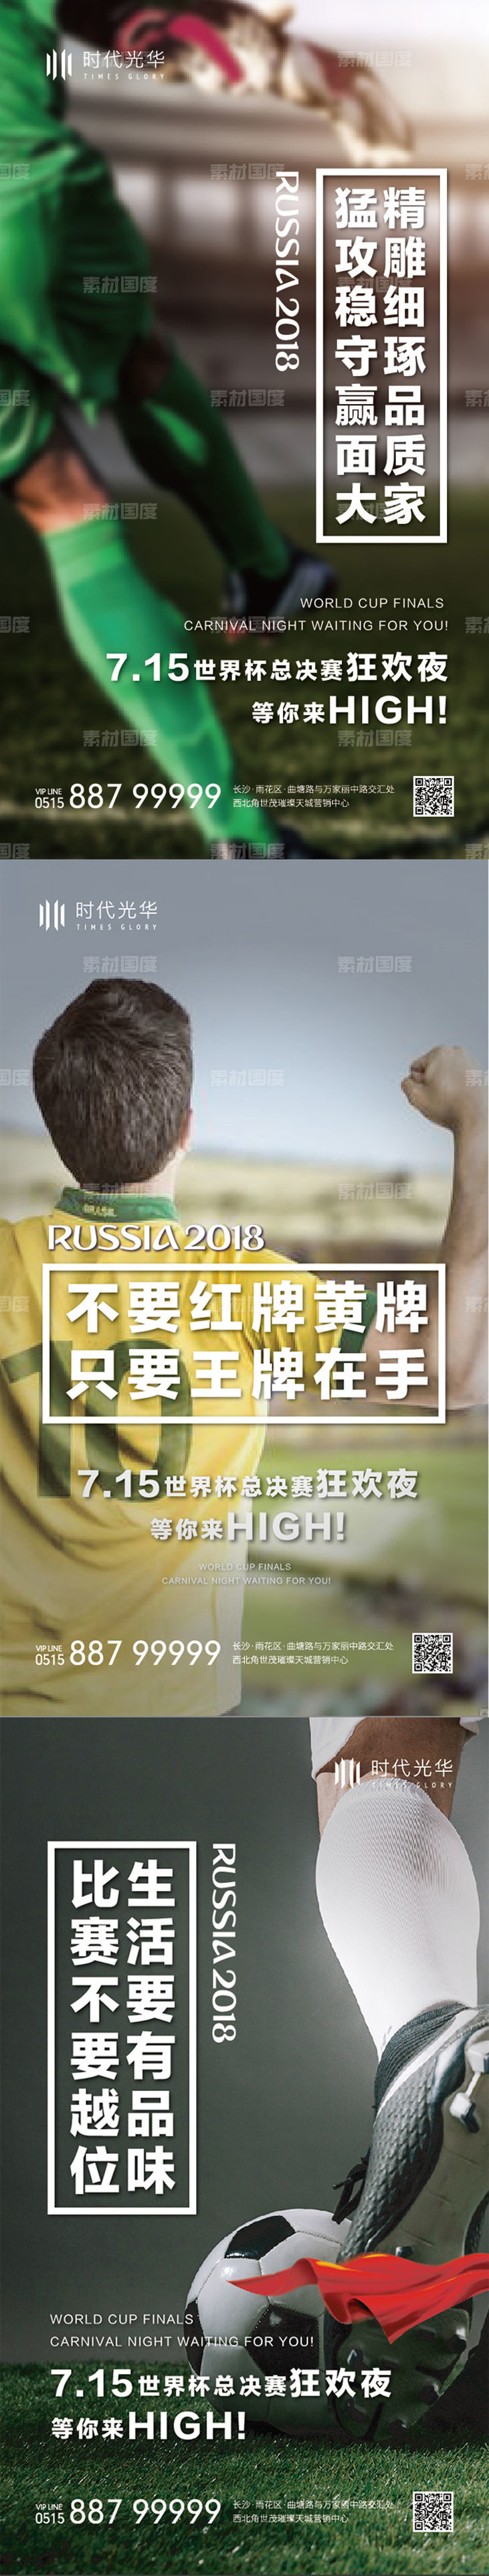 世界杯活动系列稿